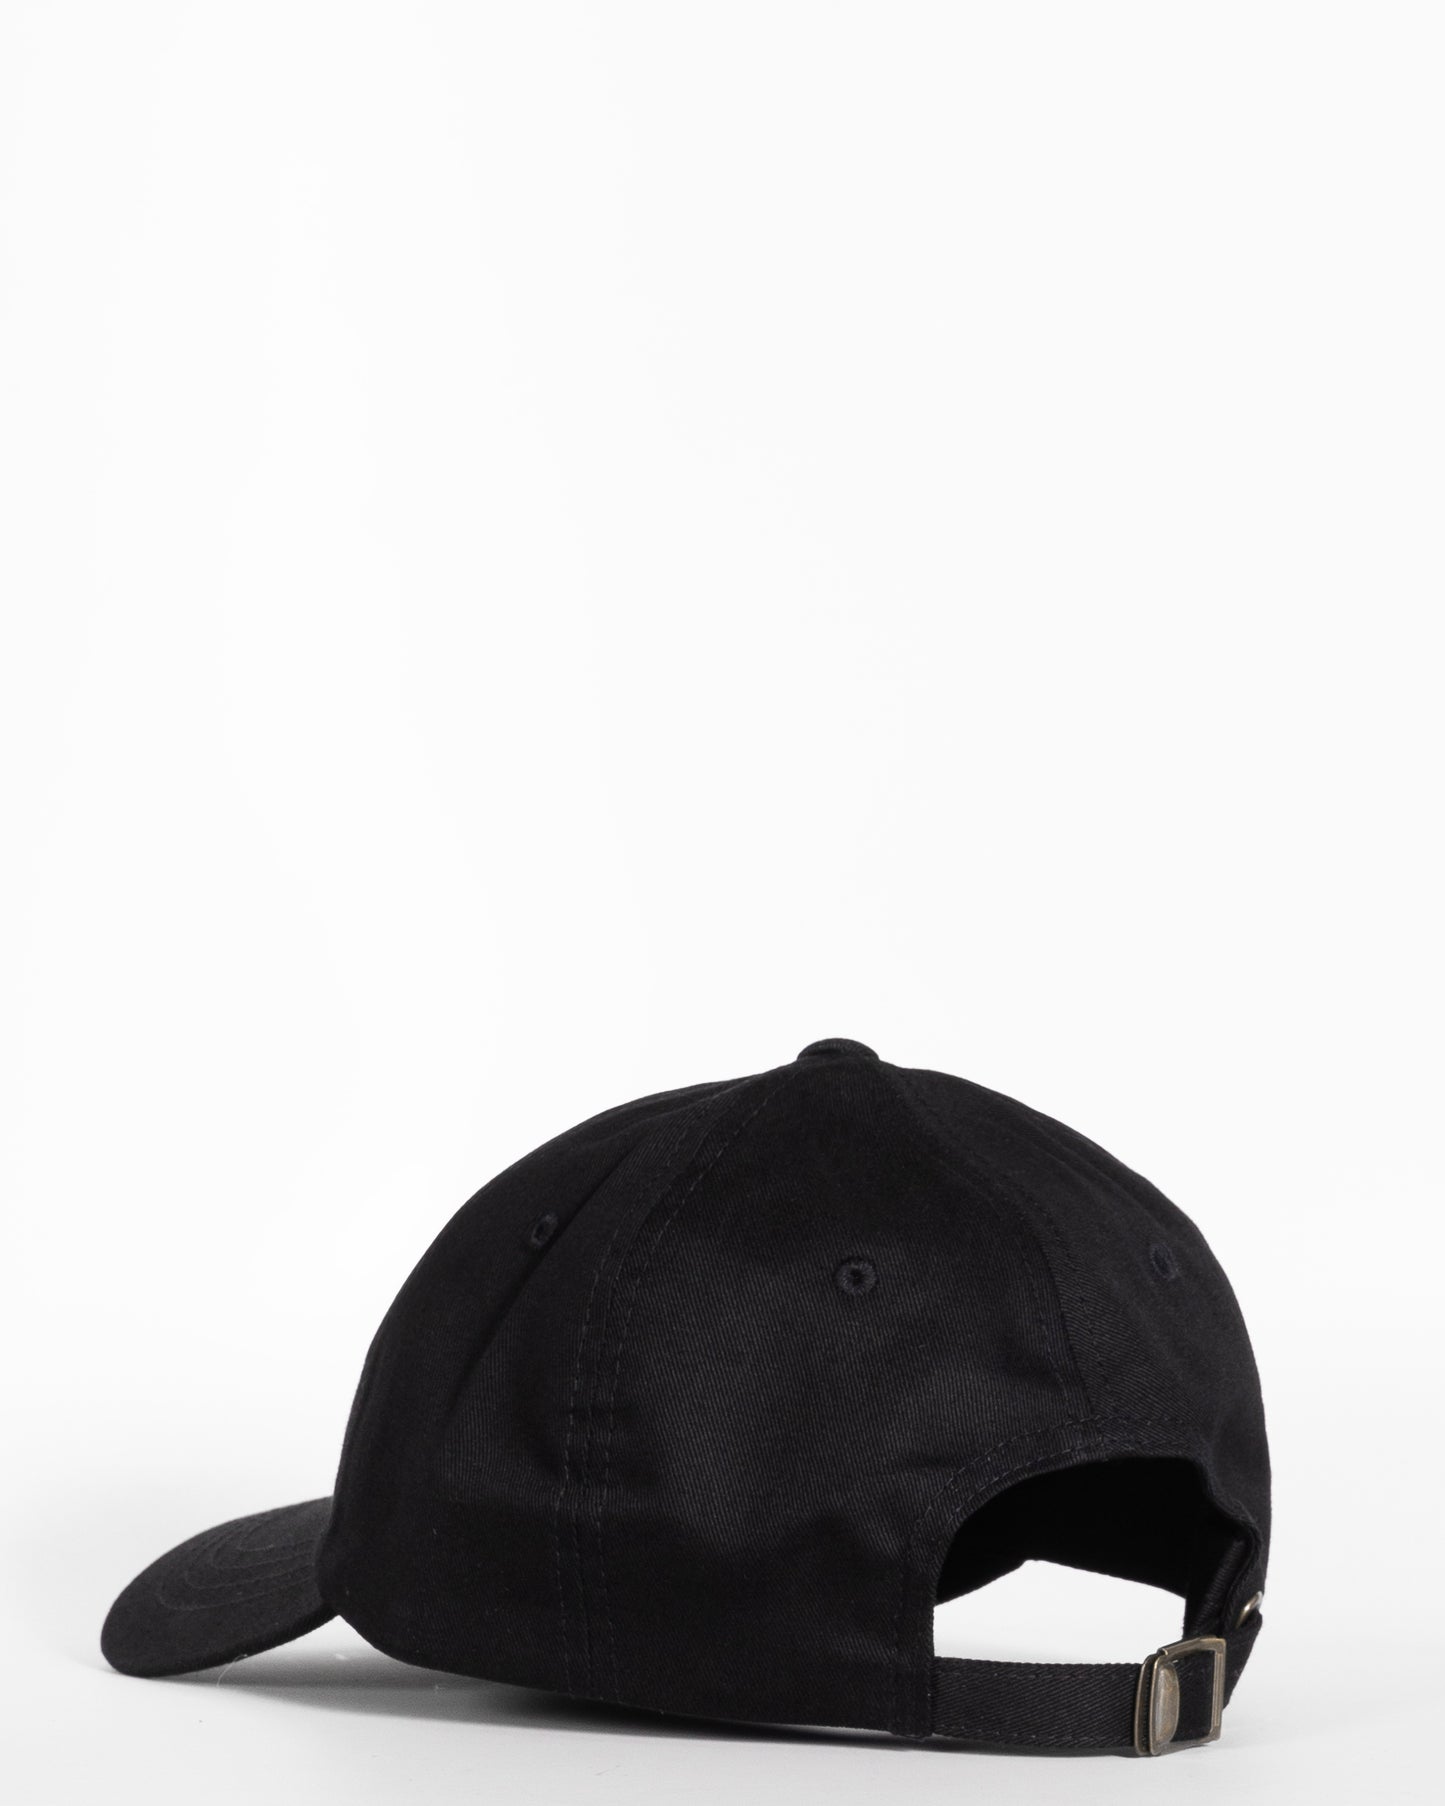 Black Dad Hat - Activ8 Logo